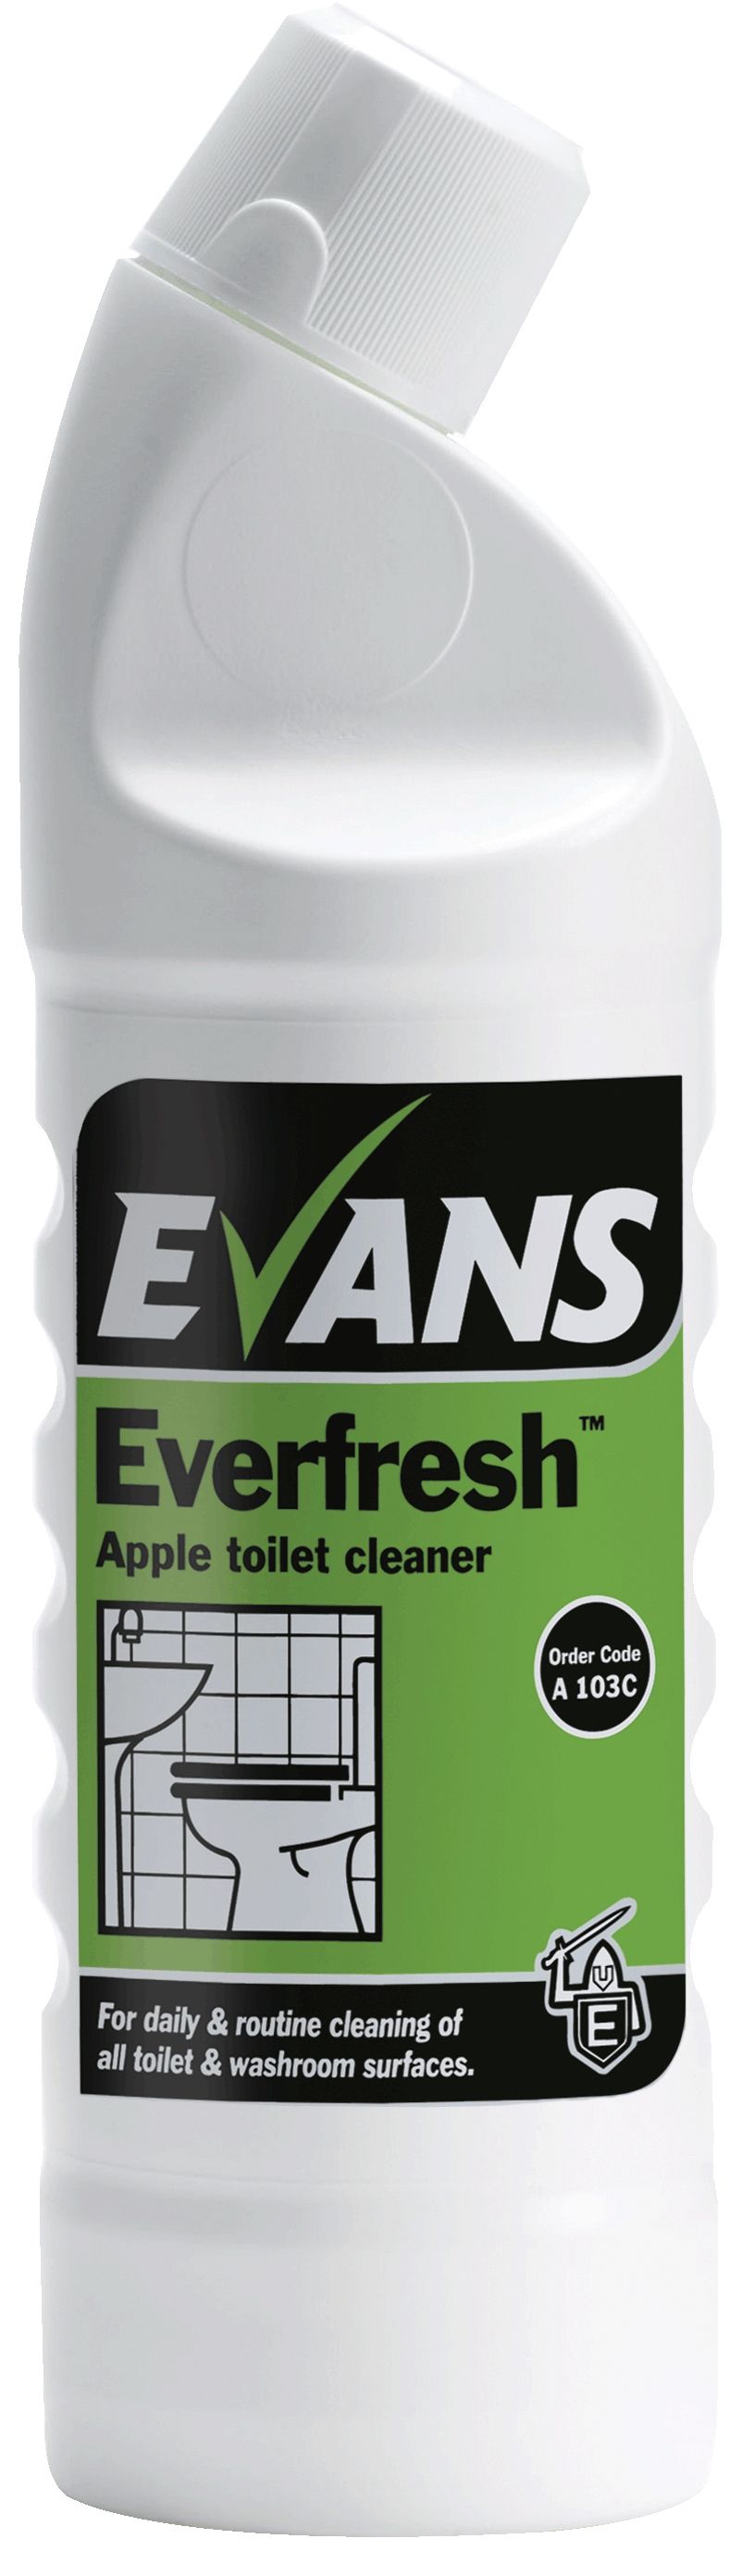 Evans Everfresh Apple - Toilet & Washroom Cleaner 1 Ltr